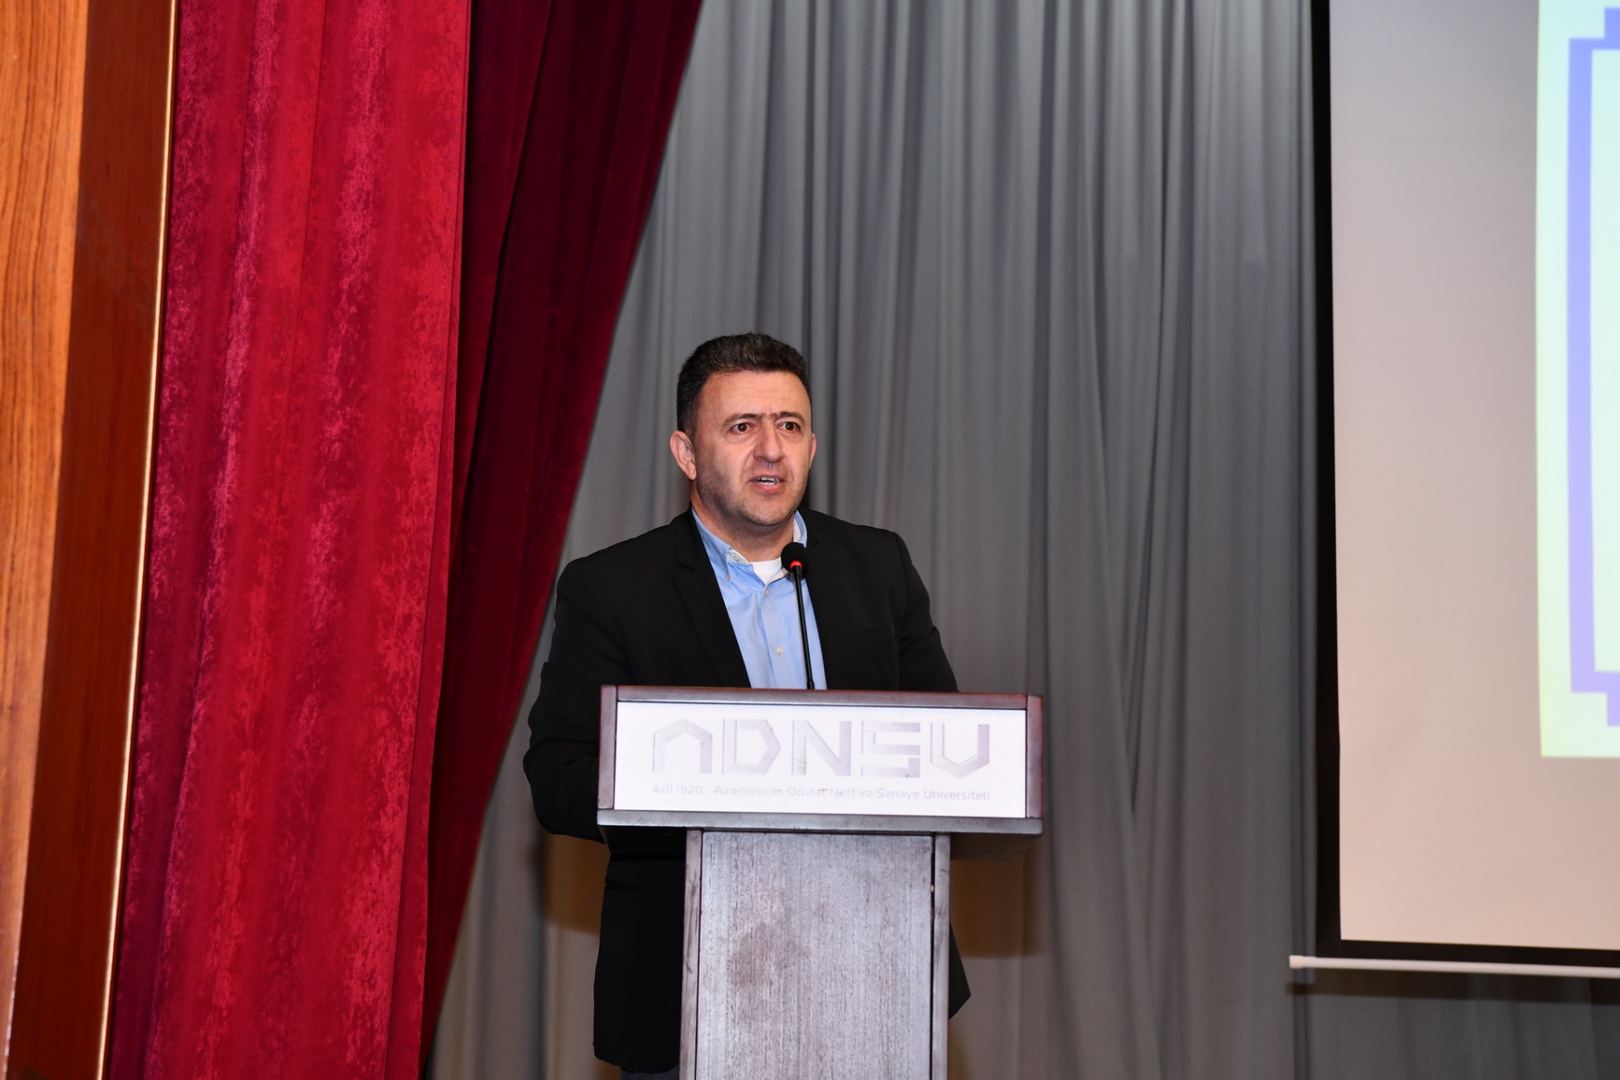 ODTU-nun rektoru, professor Mustafa Verşan Kökə ADNSU-nun Fəxri doktoru diplomu təqdim olunub (FOTO)